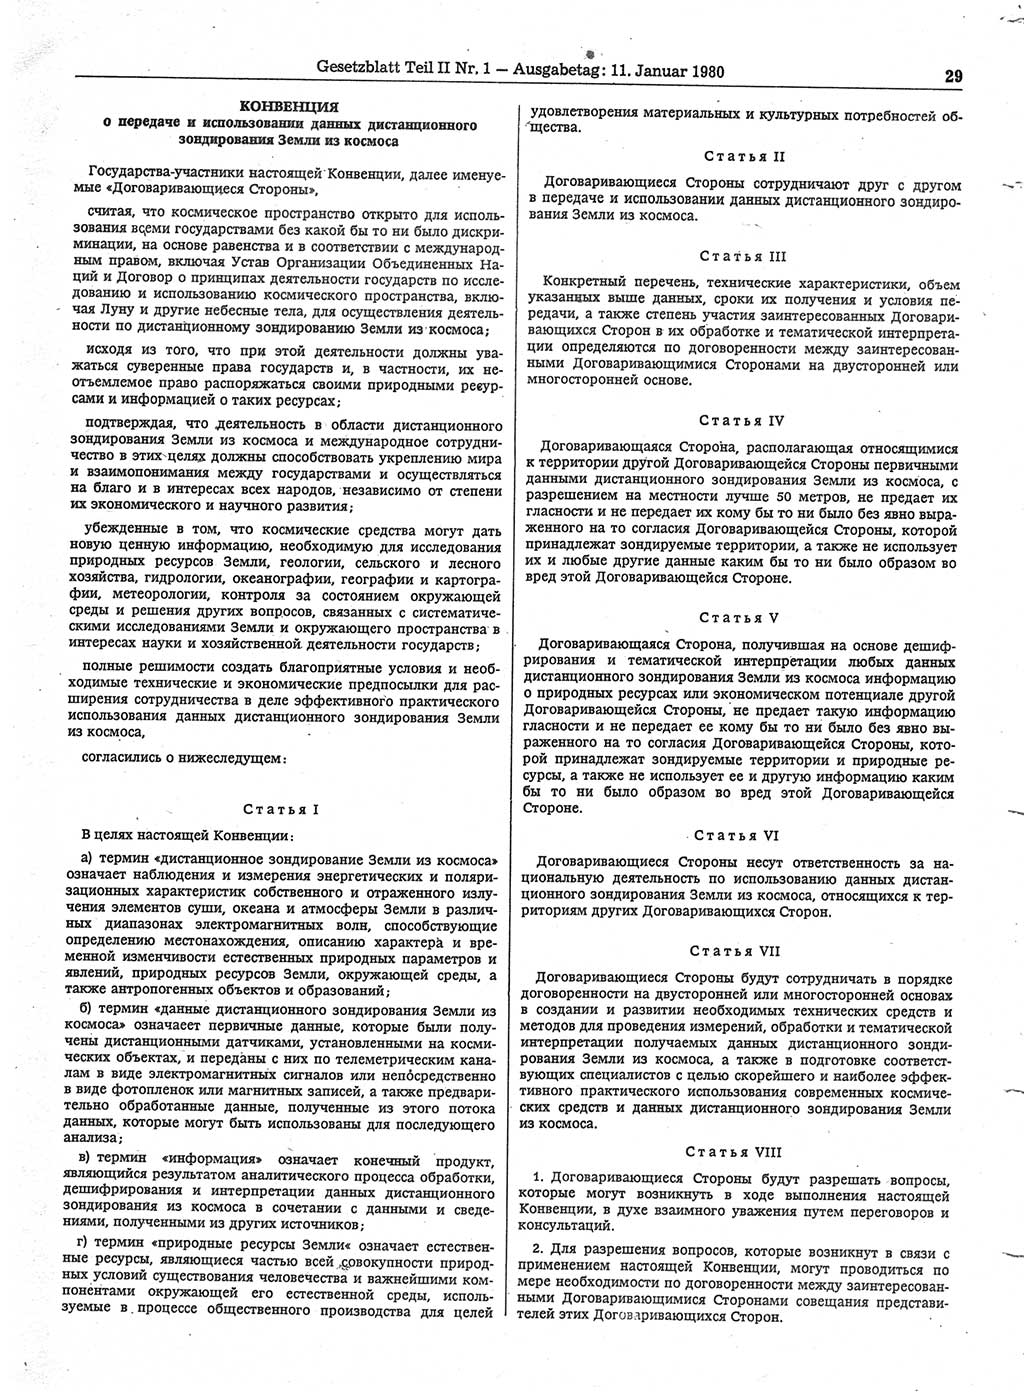 Gesetzblatt (GBl.) der Deutschen Demokratischen Republik (DDR) Teil ⅠⅠ 1980, Seite 29 (GBl. DDR ⅠⅠ 1980, S. 29)